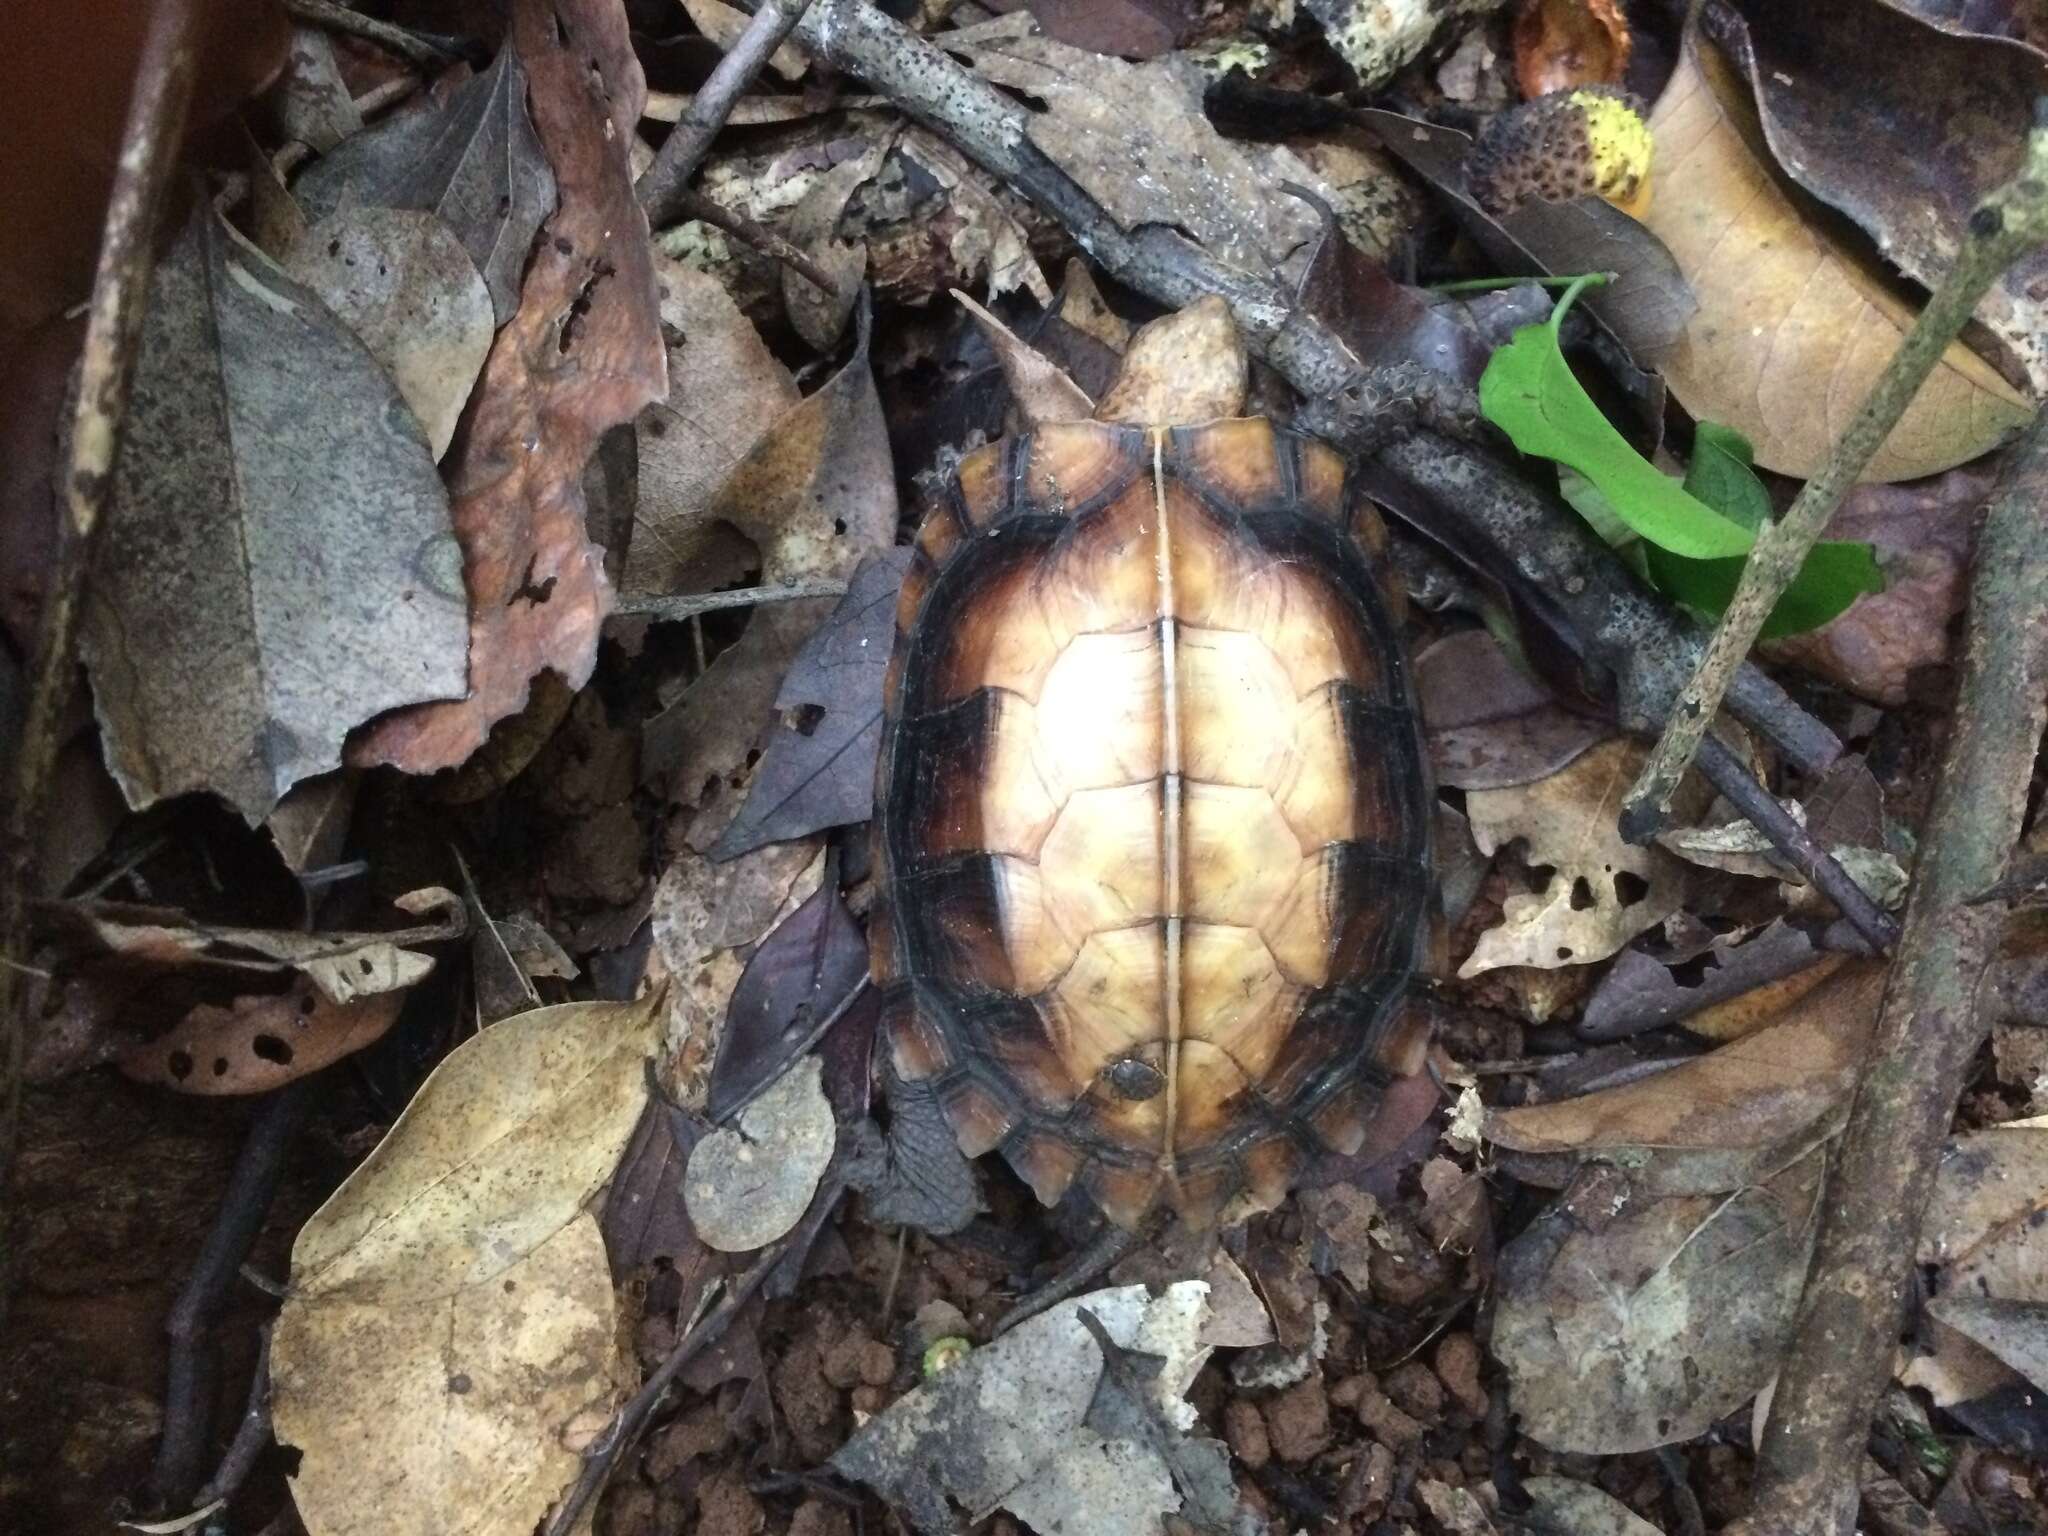 Image of Keeled box turtle